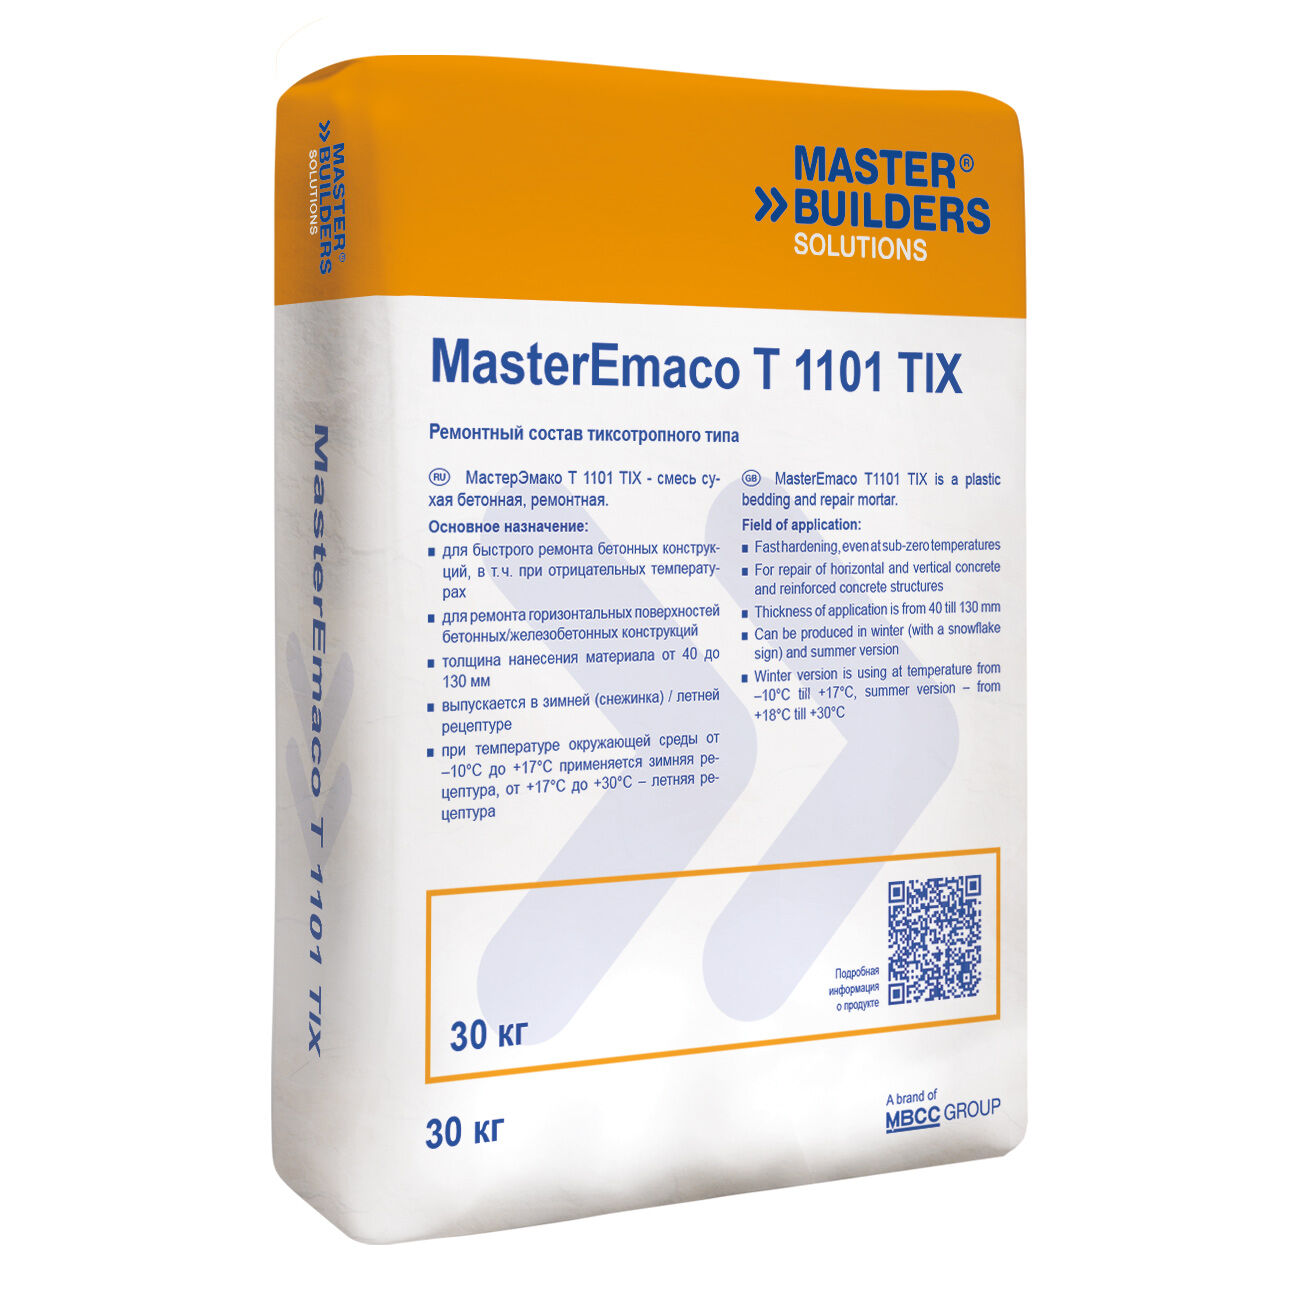 Ремонтная смесь MasterEmaco T 1100 TIX W (EMACO FAST TIXO W) Тиксотропный тип